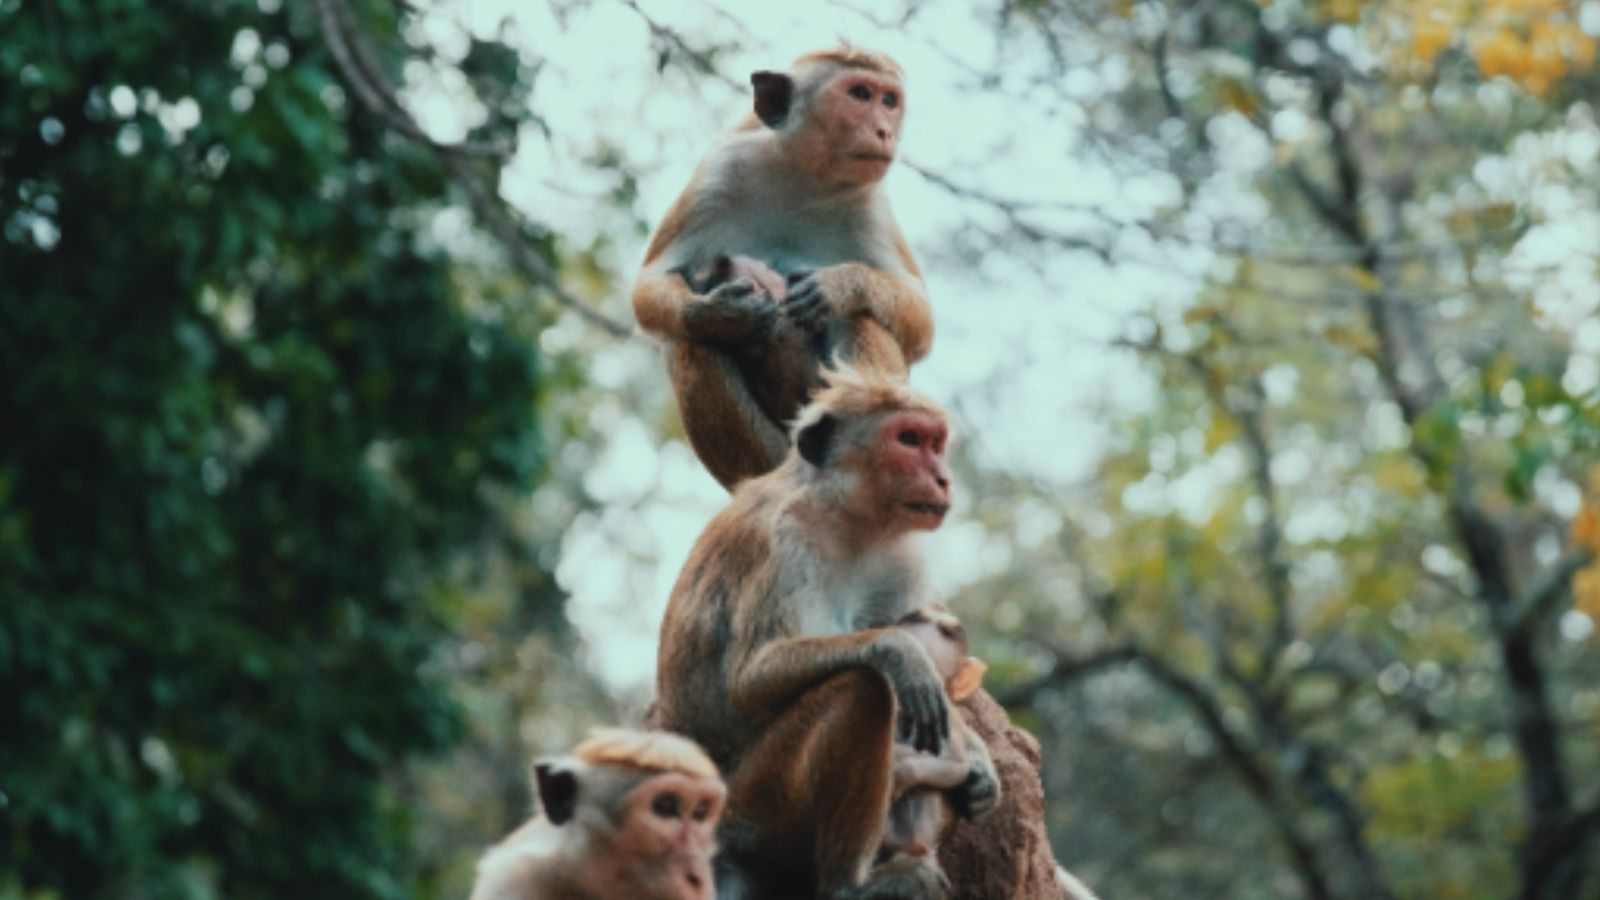 Pemerintah Sri Lanka mengirim seekor monyet ke China… apa alasannya?